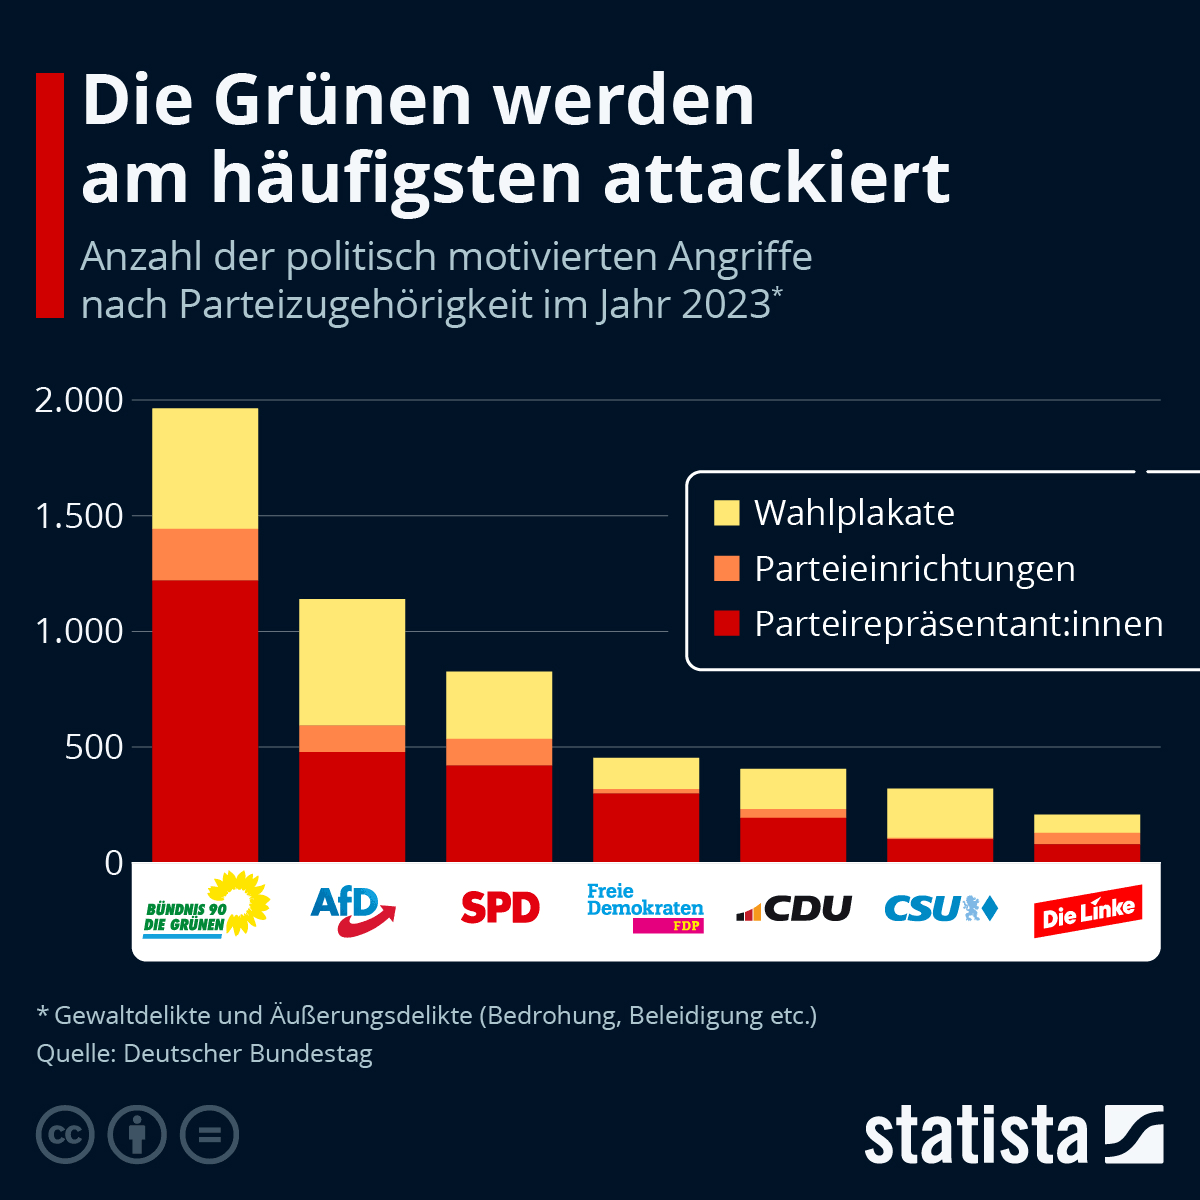 Hier eine Grafik von statista.de für das Jahr 2023: Nicht die #AfD ist das Opfer,  sondern die #B90dieGrünen. Und wenn man nun bedenkt, von welchem Klientel die Angriffe auf alle anderen Parteien, außer der #AfD, ausgehen, dann sieht das Bild ganz anders aus. [...]